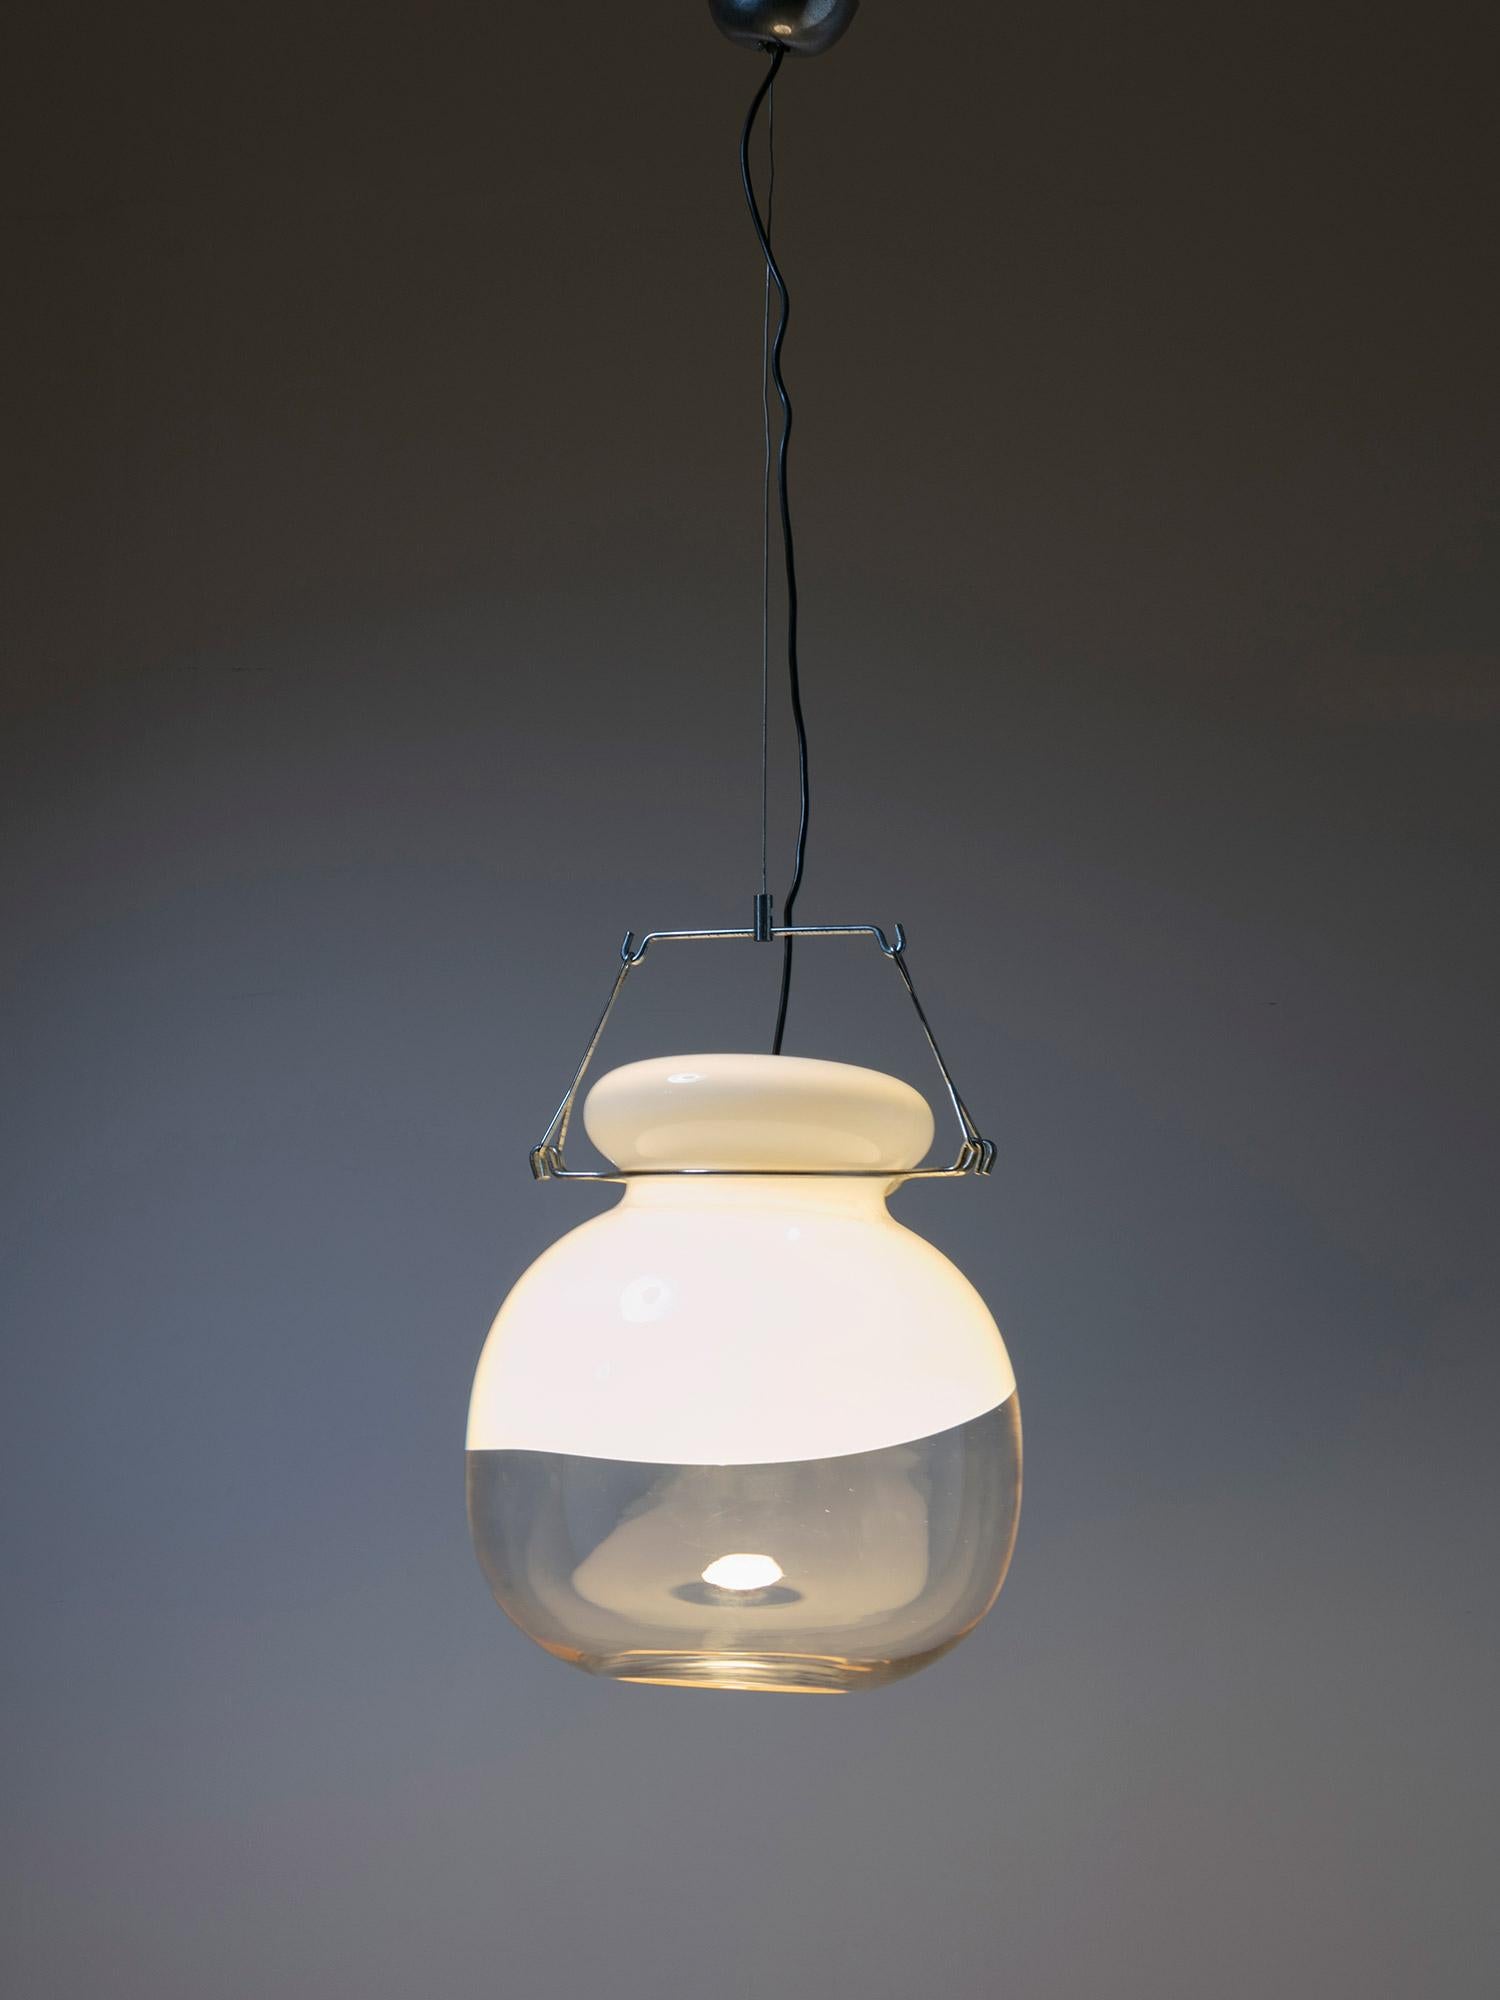 Rare lampe suspendue de Toni Zuccheri pour VeArt.
Le cadre chromé supporte un grand abat-jour moulé en verre de Murano.